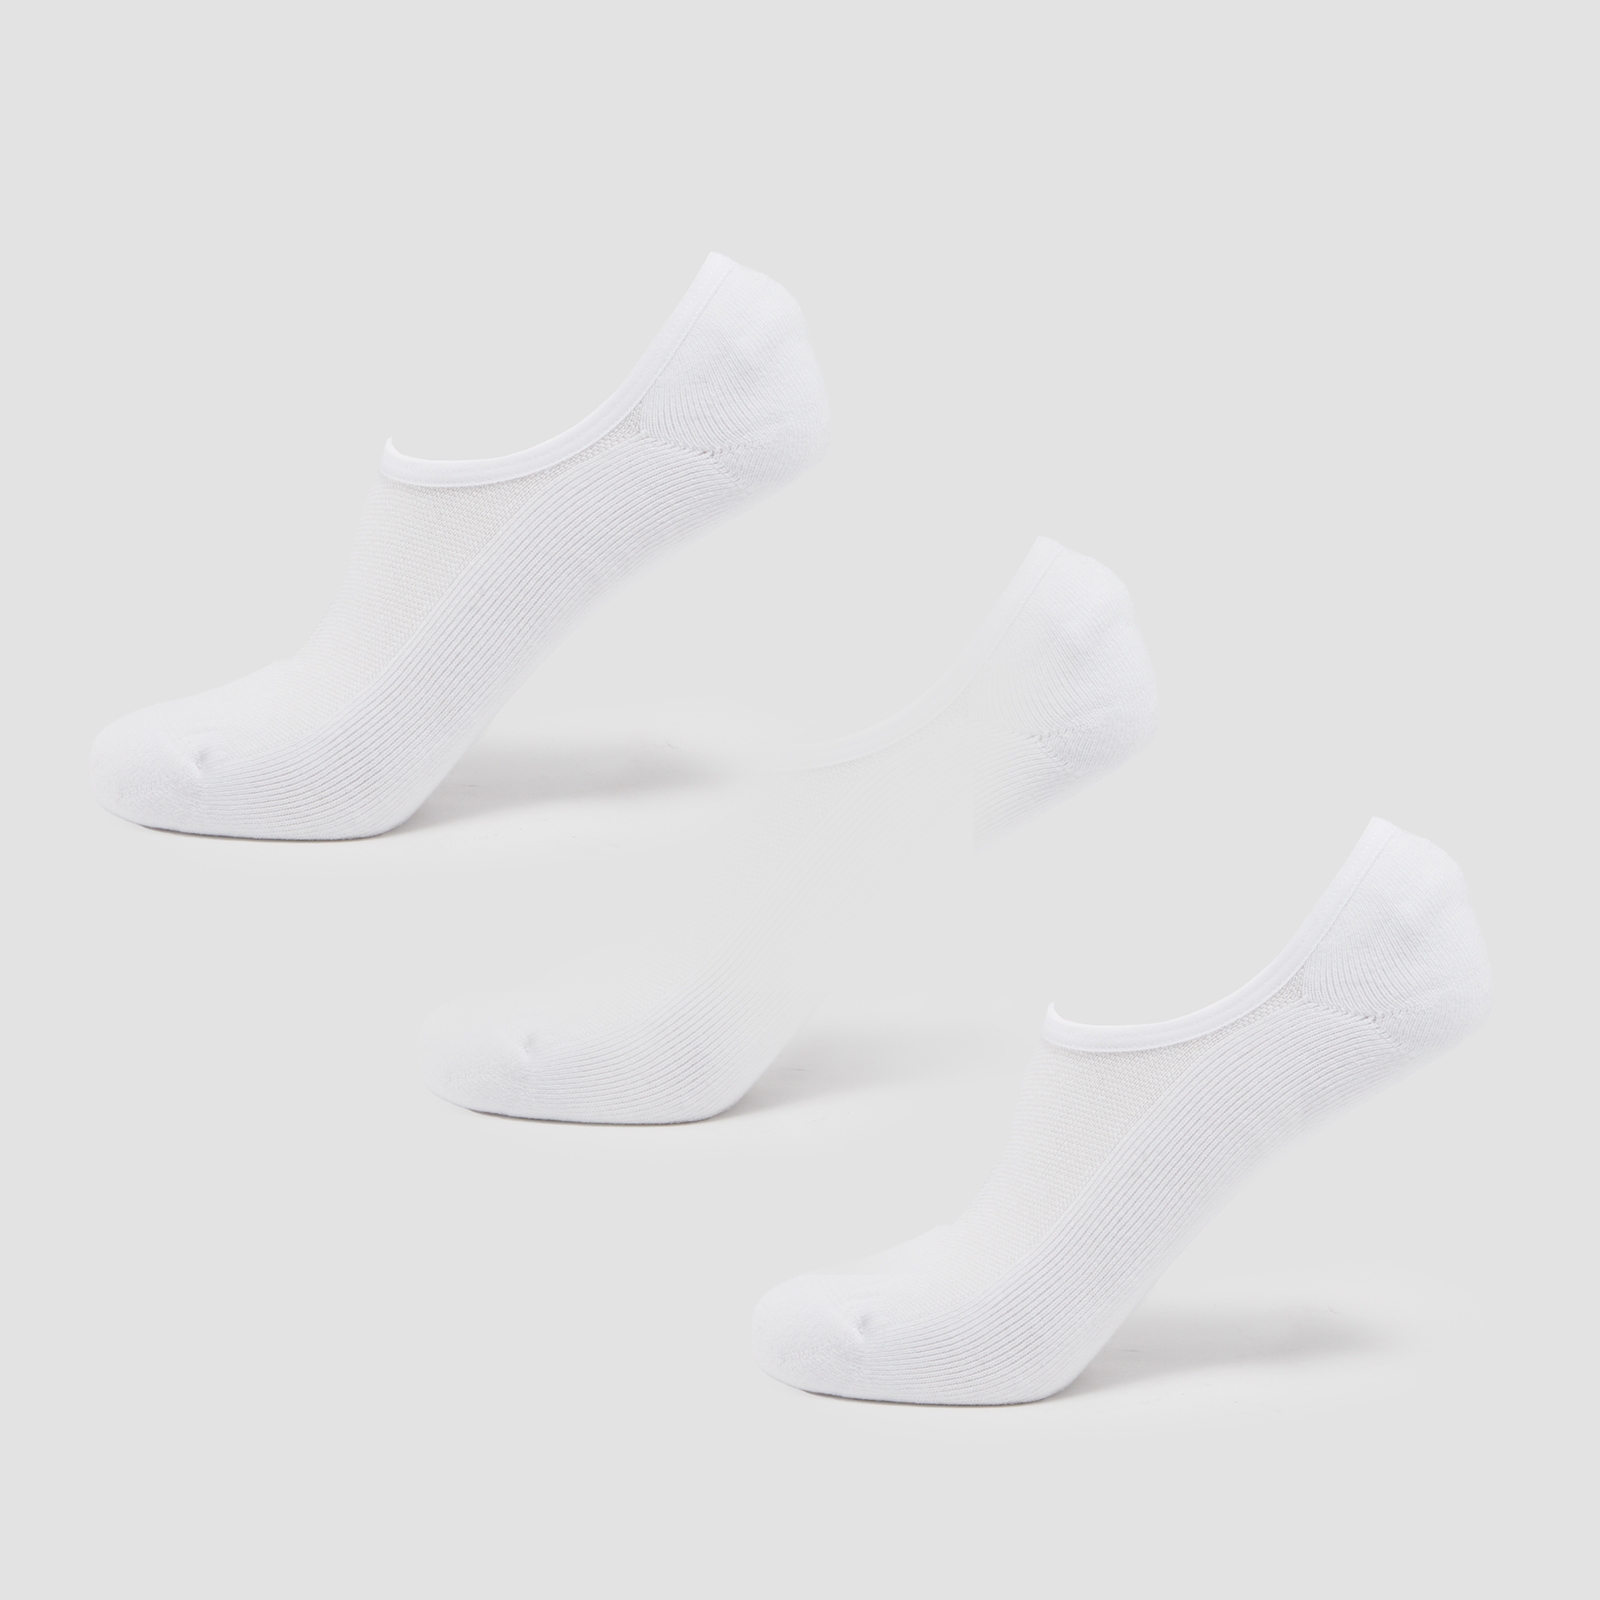 Image of MP Unisex Invisible Socks (3 Pack) - White - UK 9-11